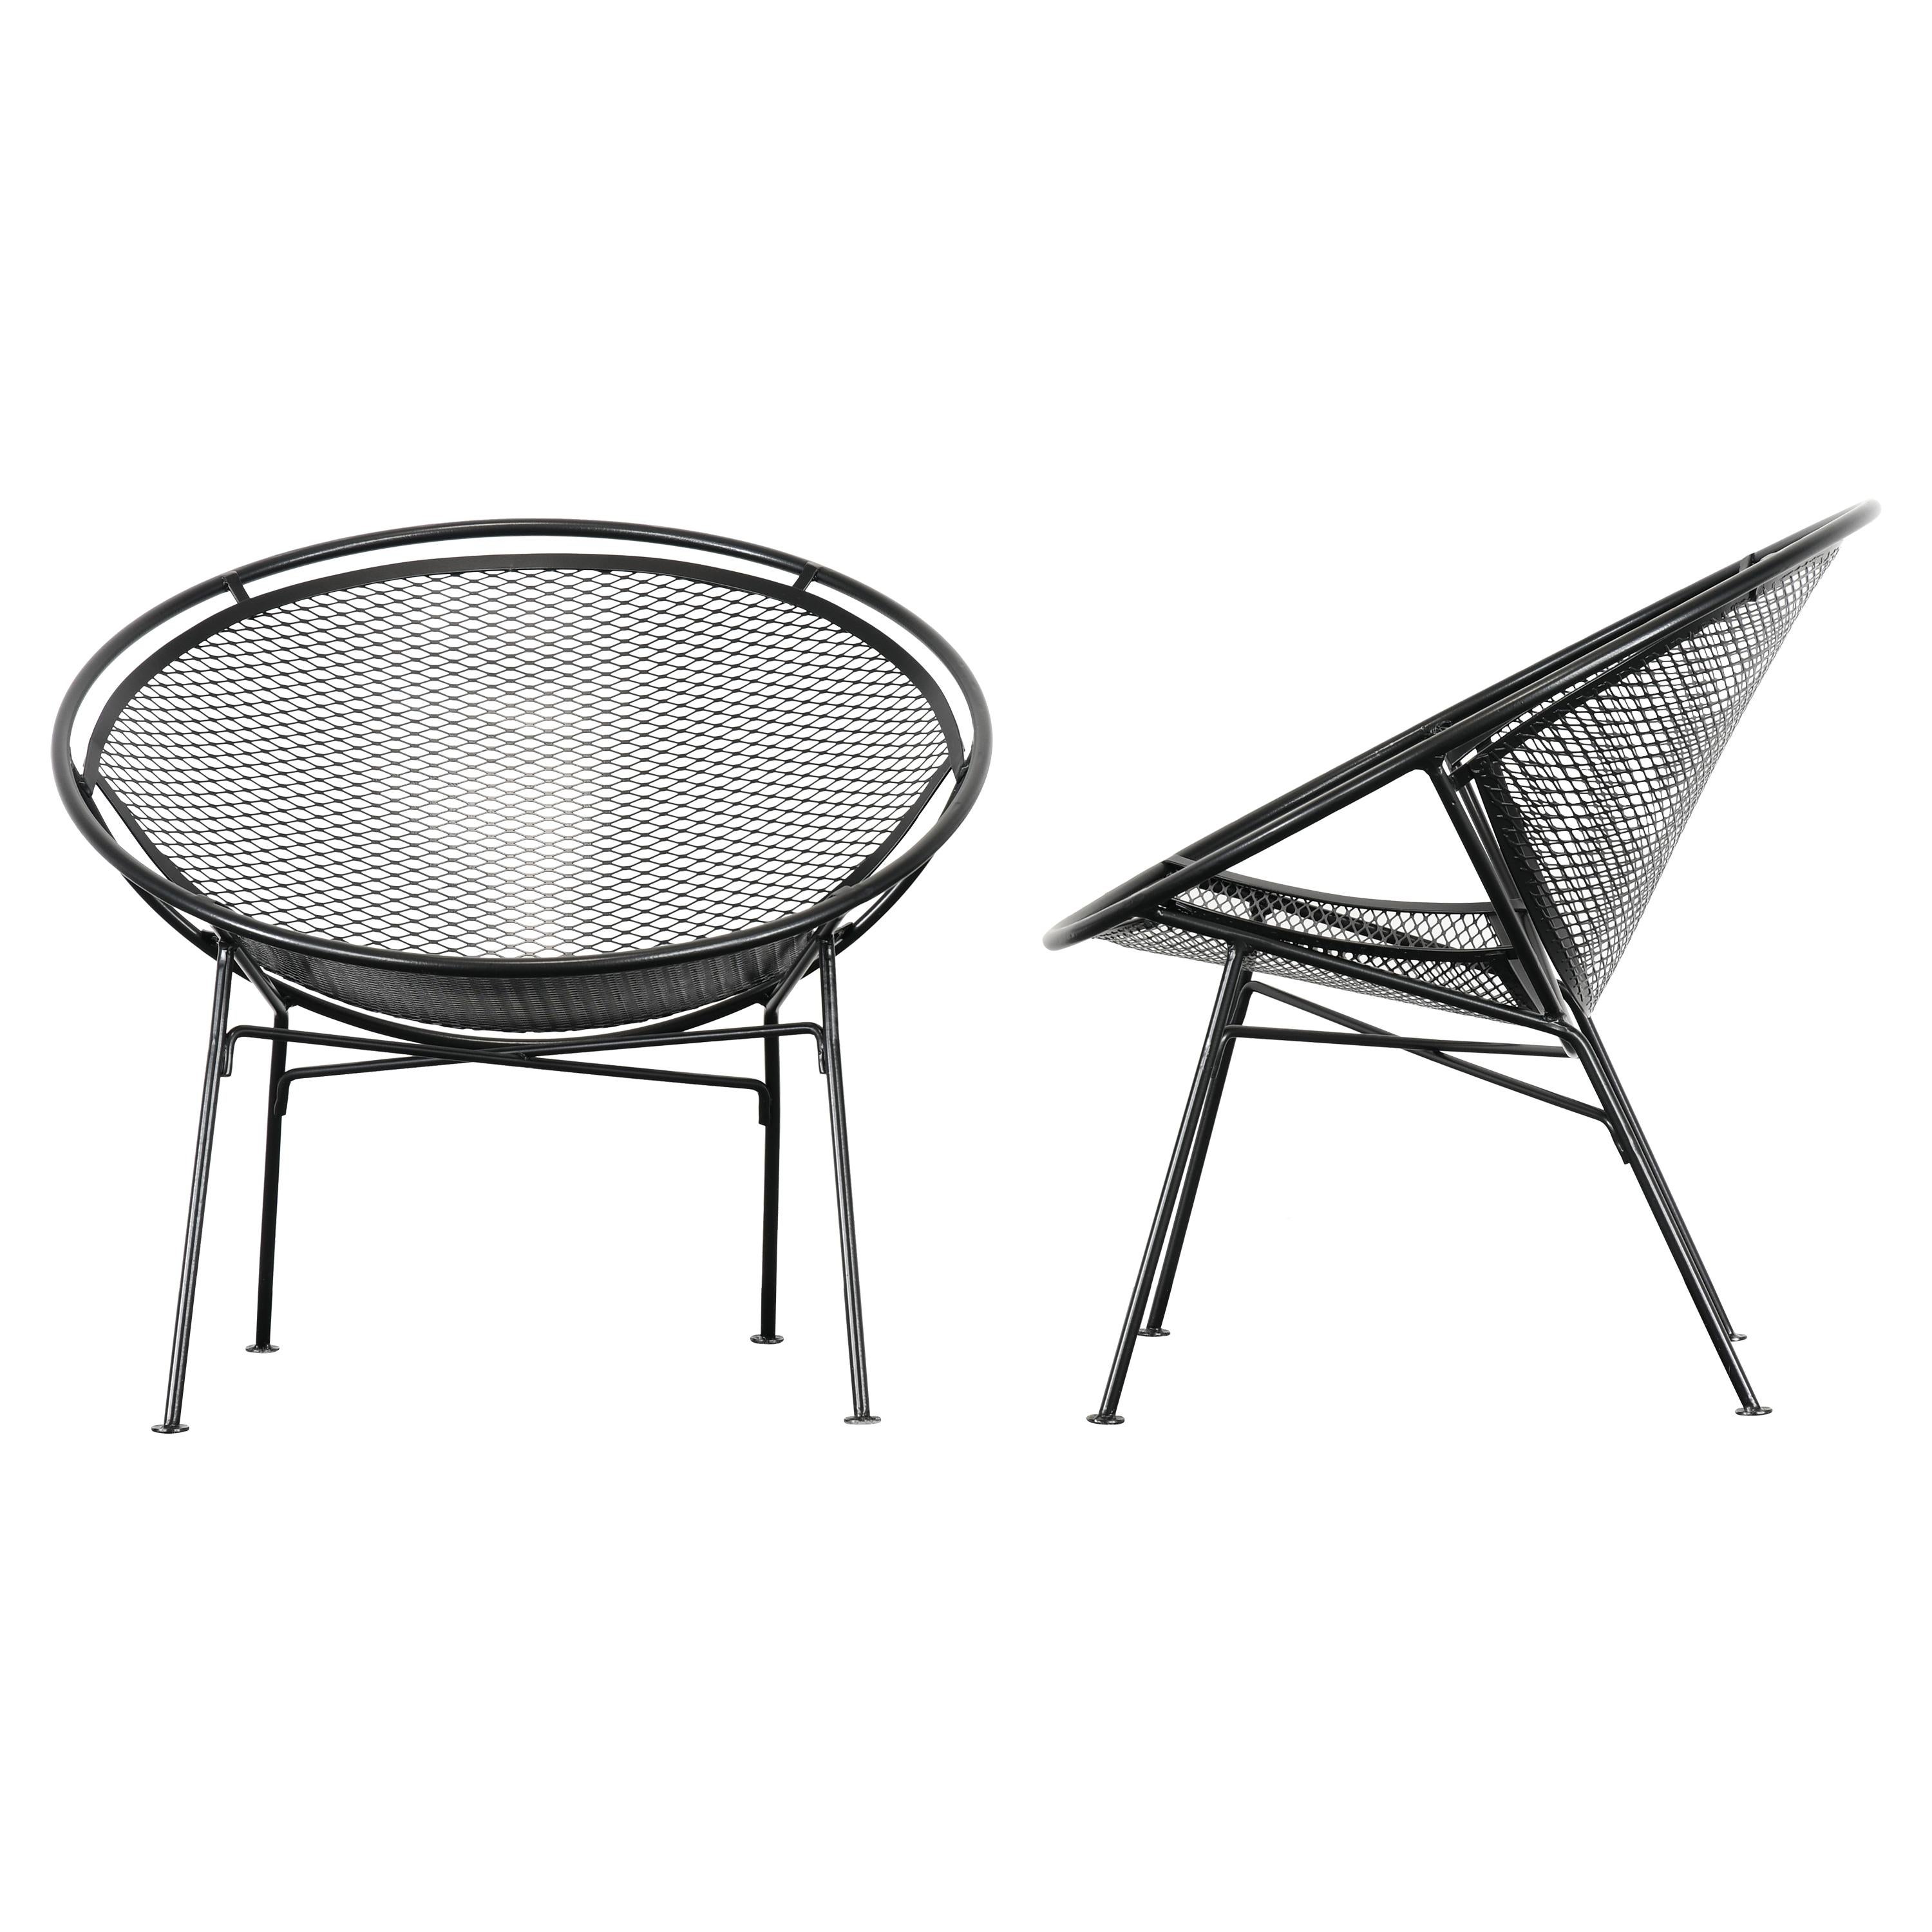 Pair of Salterini "Radar" Chairs, 1950s